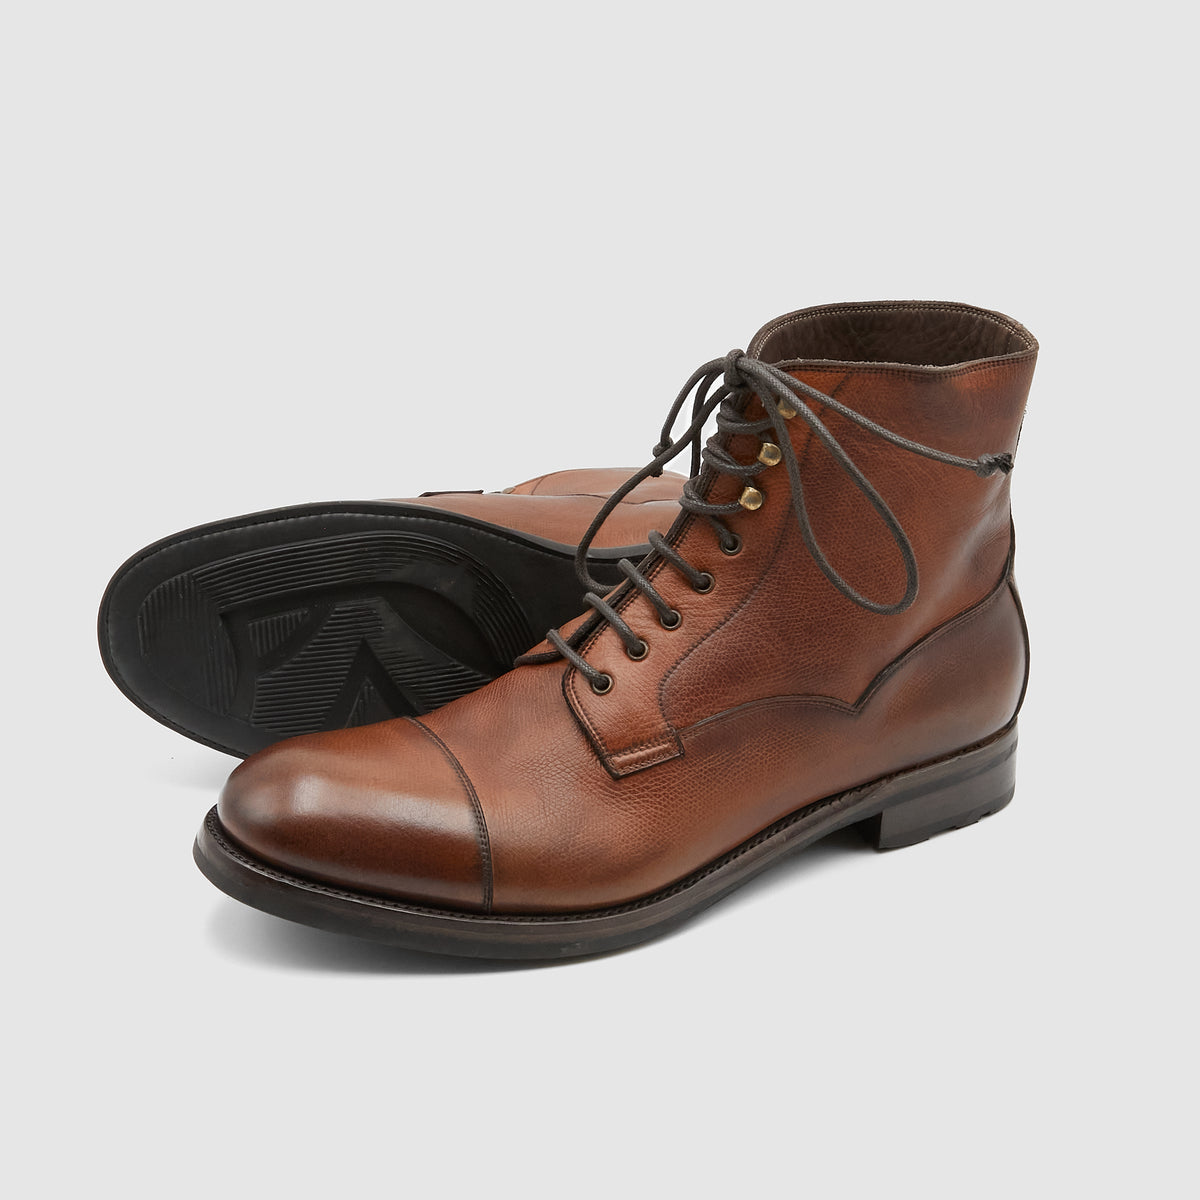 Silvano Sassetti Karagrain Washed Leather  Boots